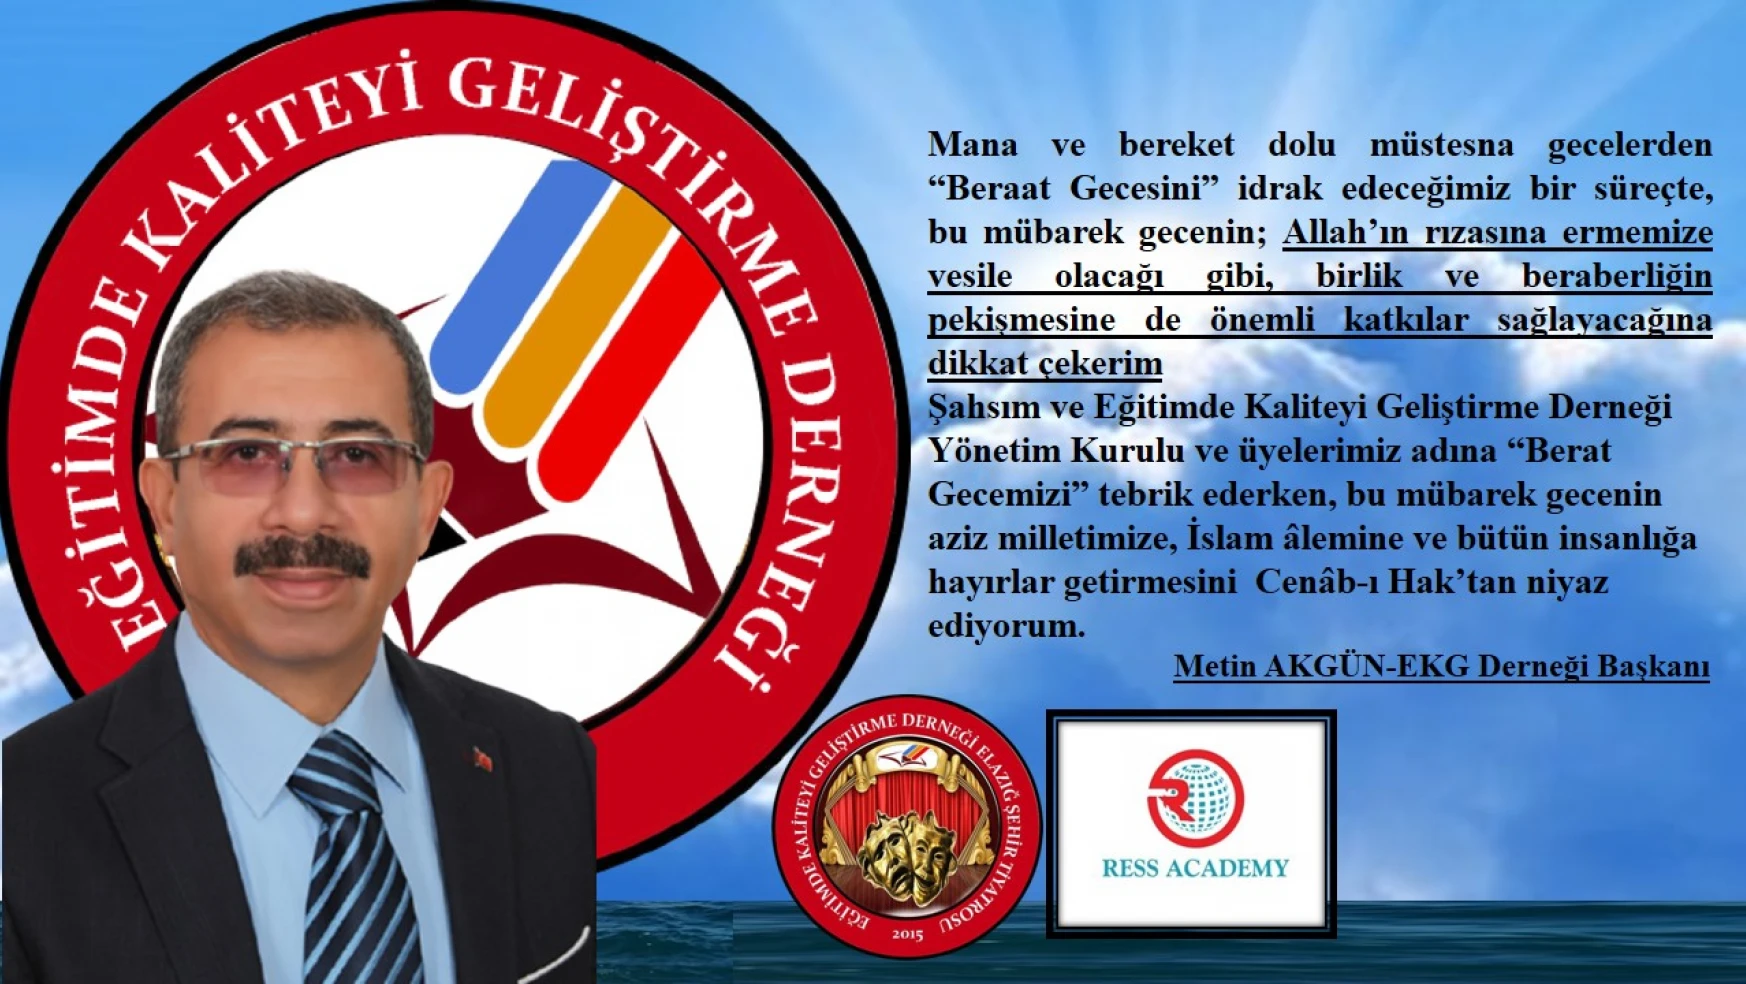 EKG Derneği Başkanı Akgün'ün, Beraat Gecesi Mesajı